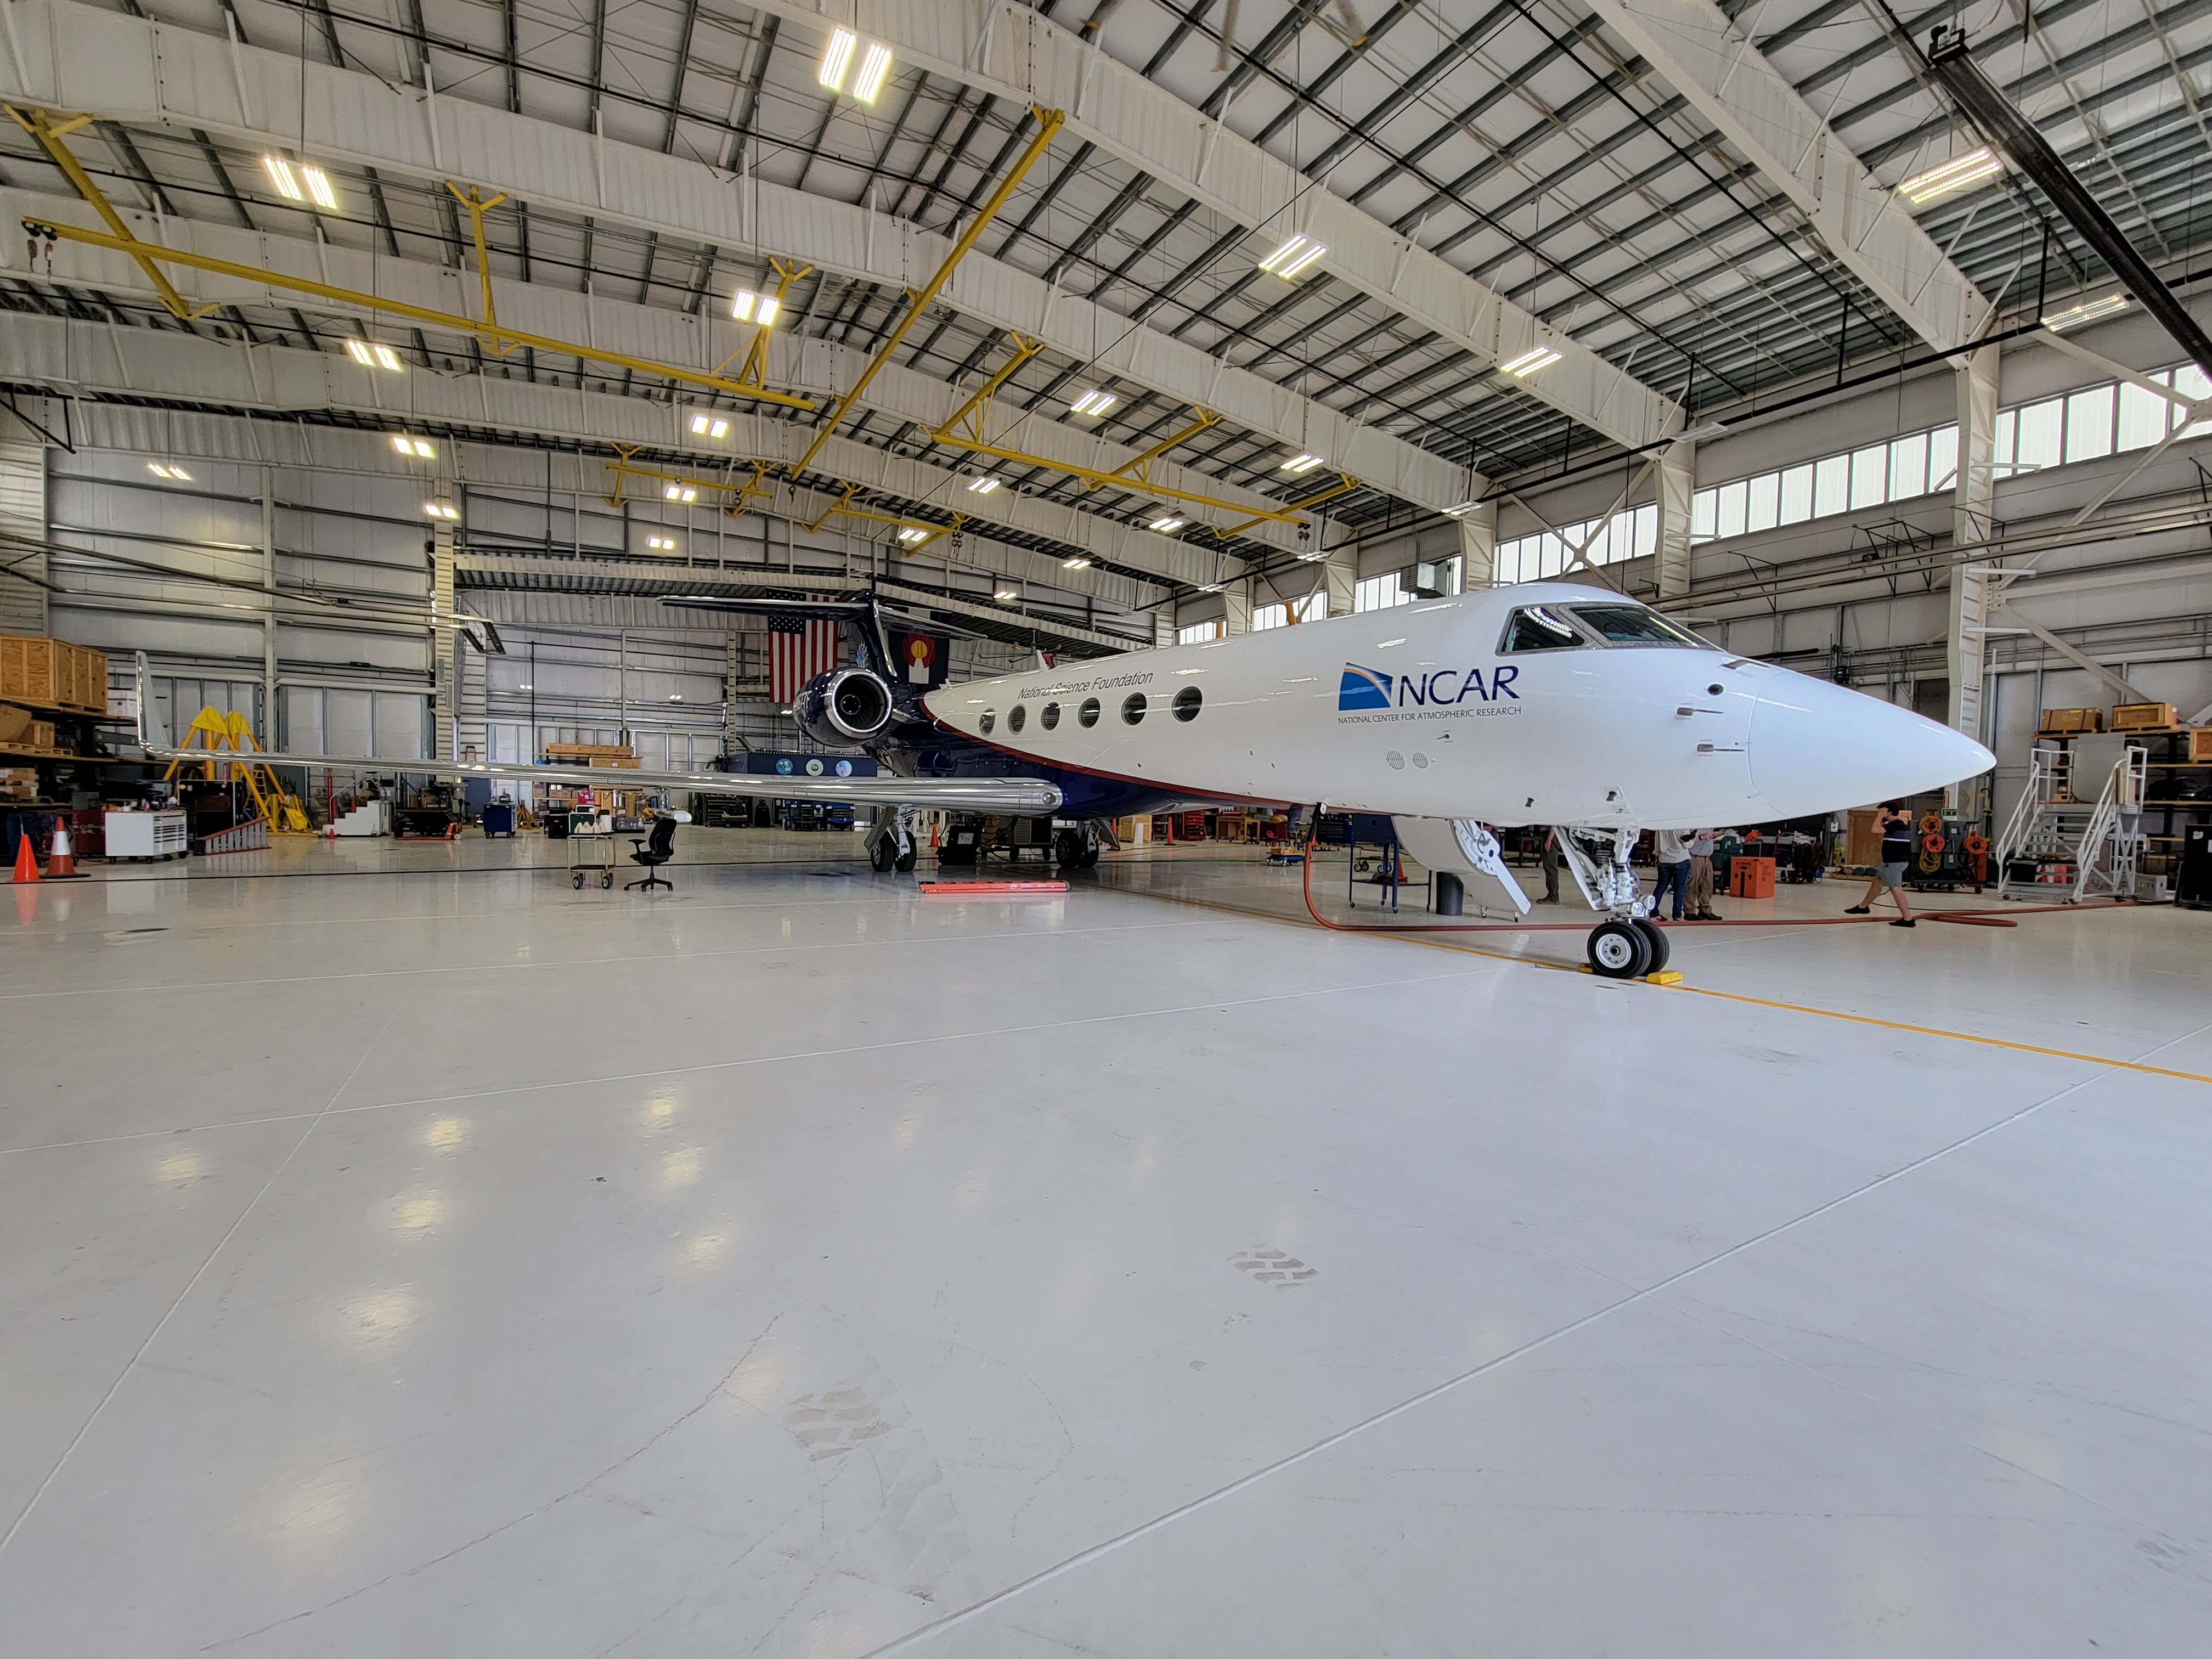 GV Research Aircraft in hangar. (Ren Smith)